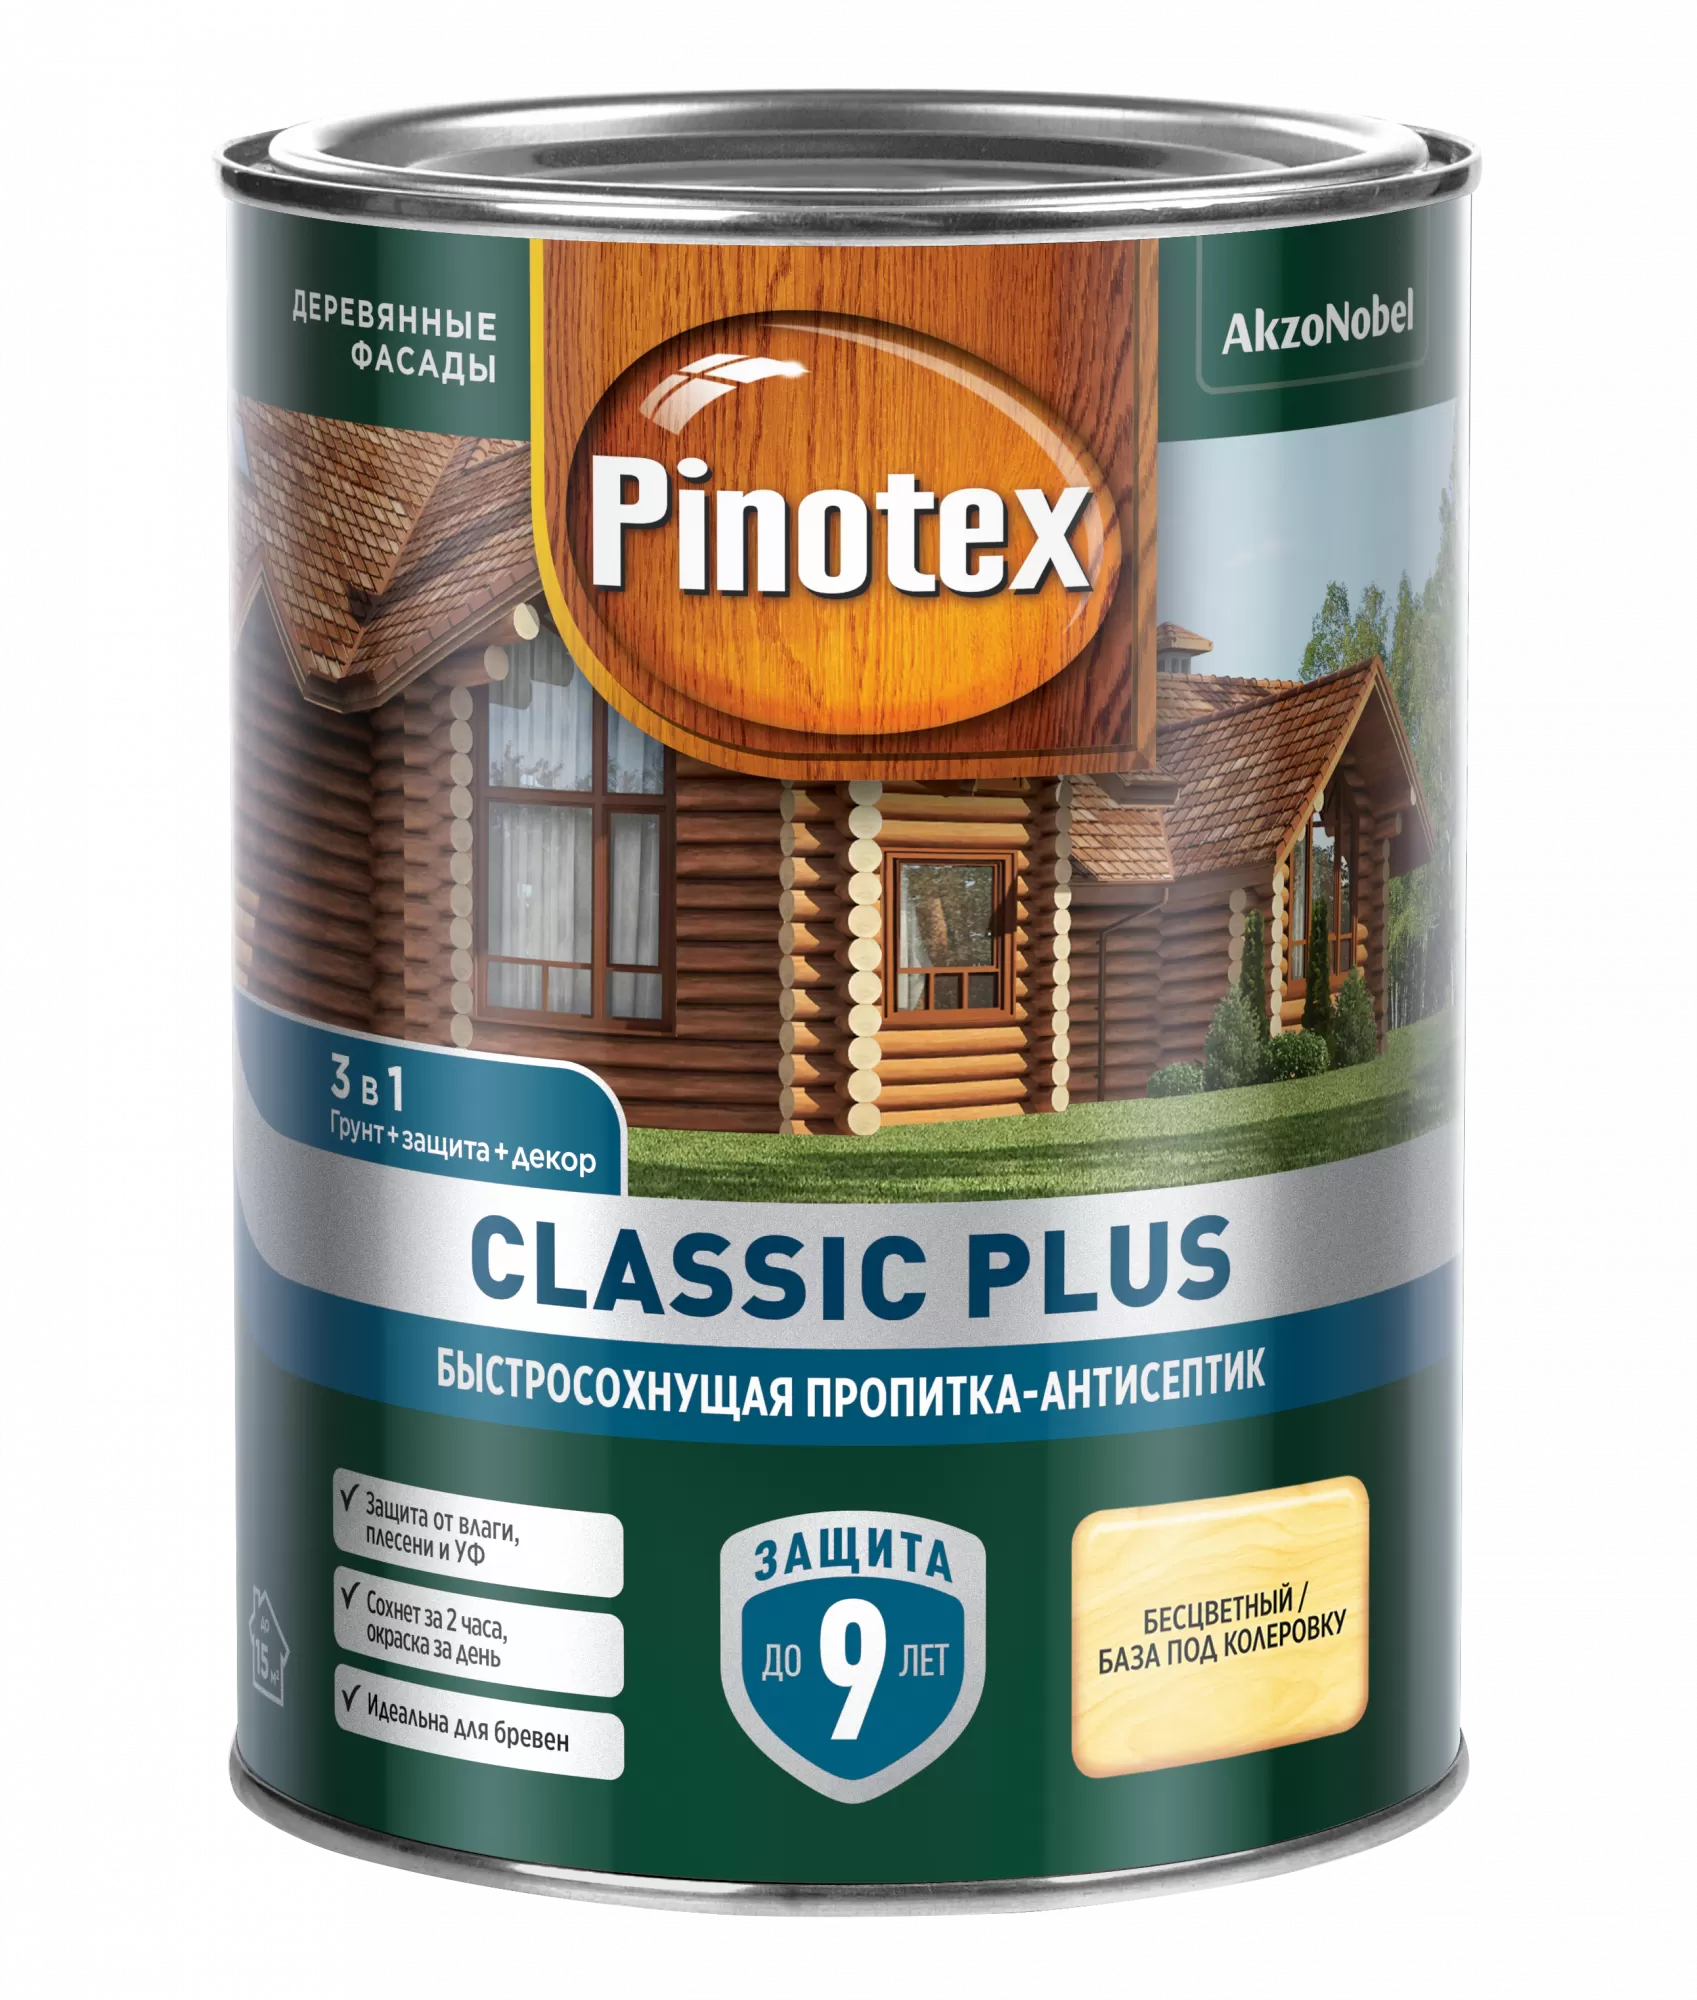 Быстросохнущая пропитка-антисептик для древесины Pinotex Classic Plus ( Пинотекс Классик Плюс) купить по цене 1 090 ₽ | Лакокрасочная продукция  Интернет-магазин Lakiikraski